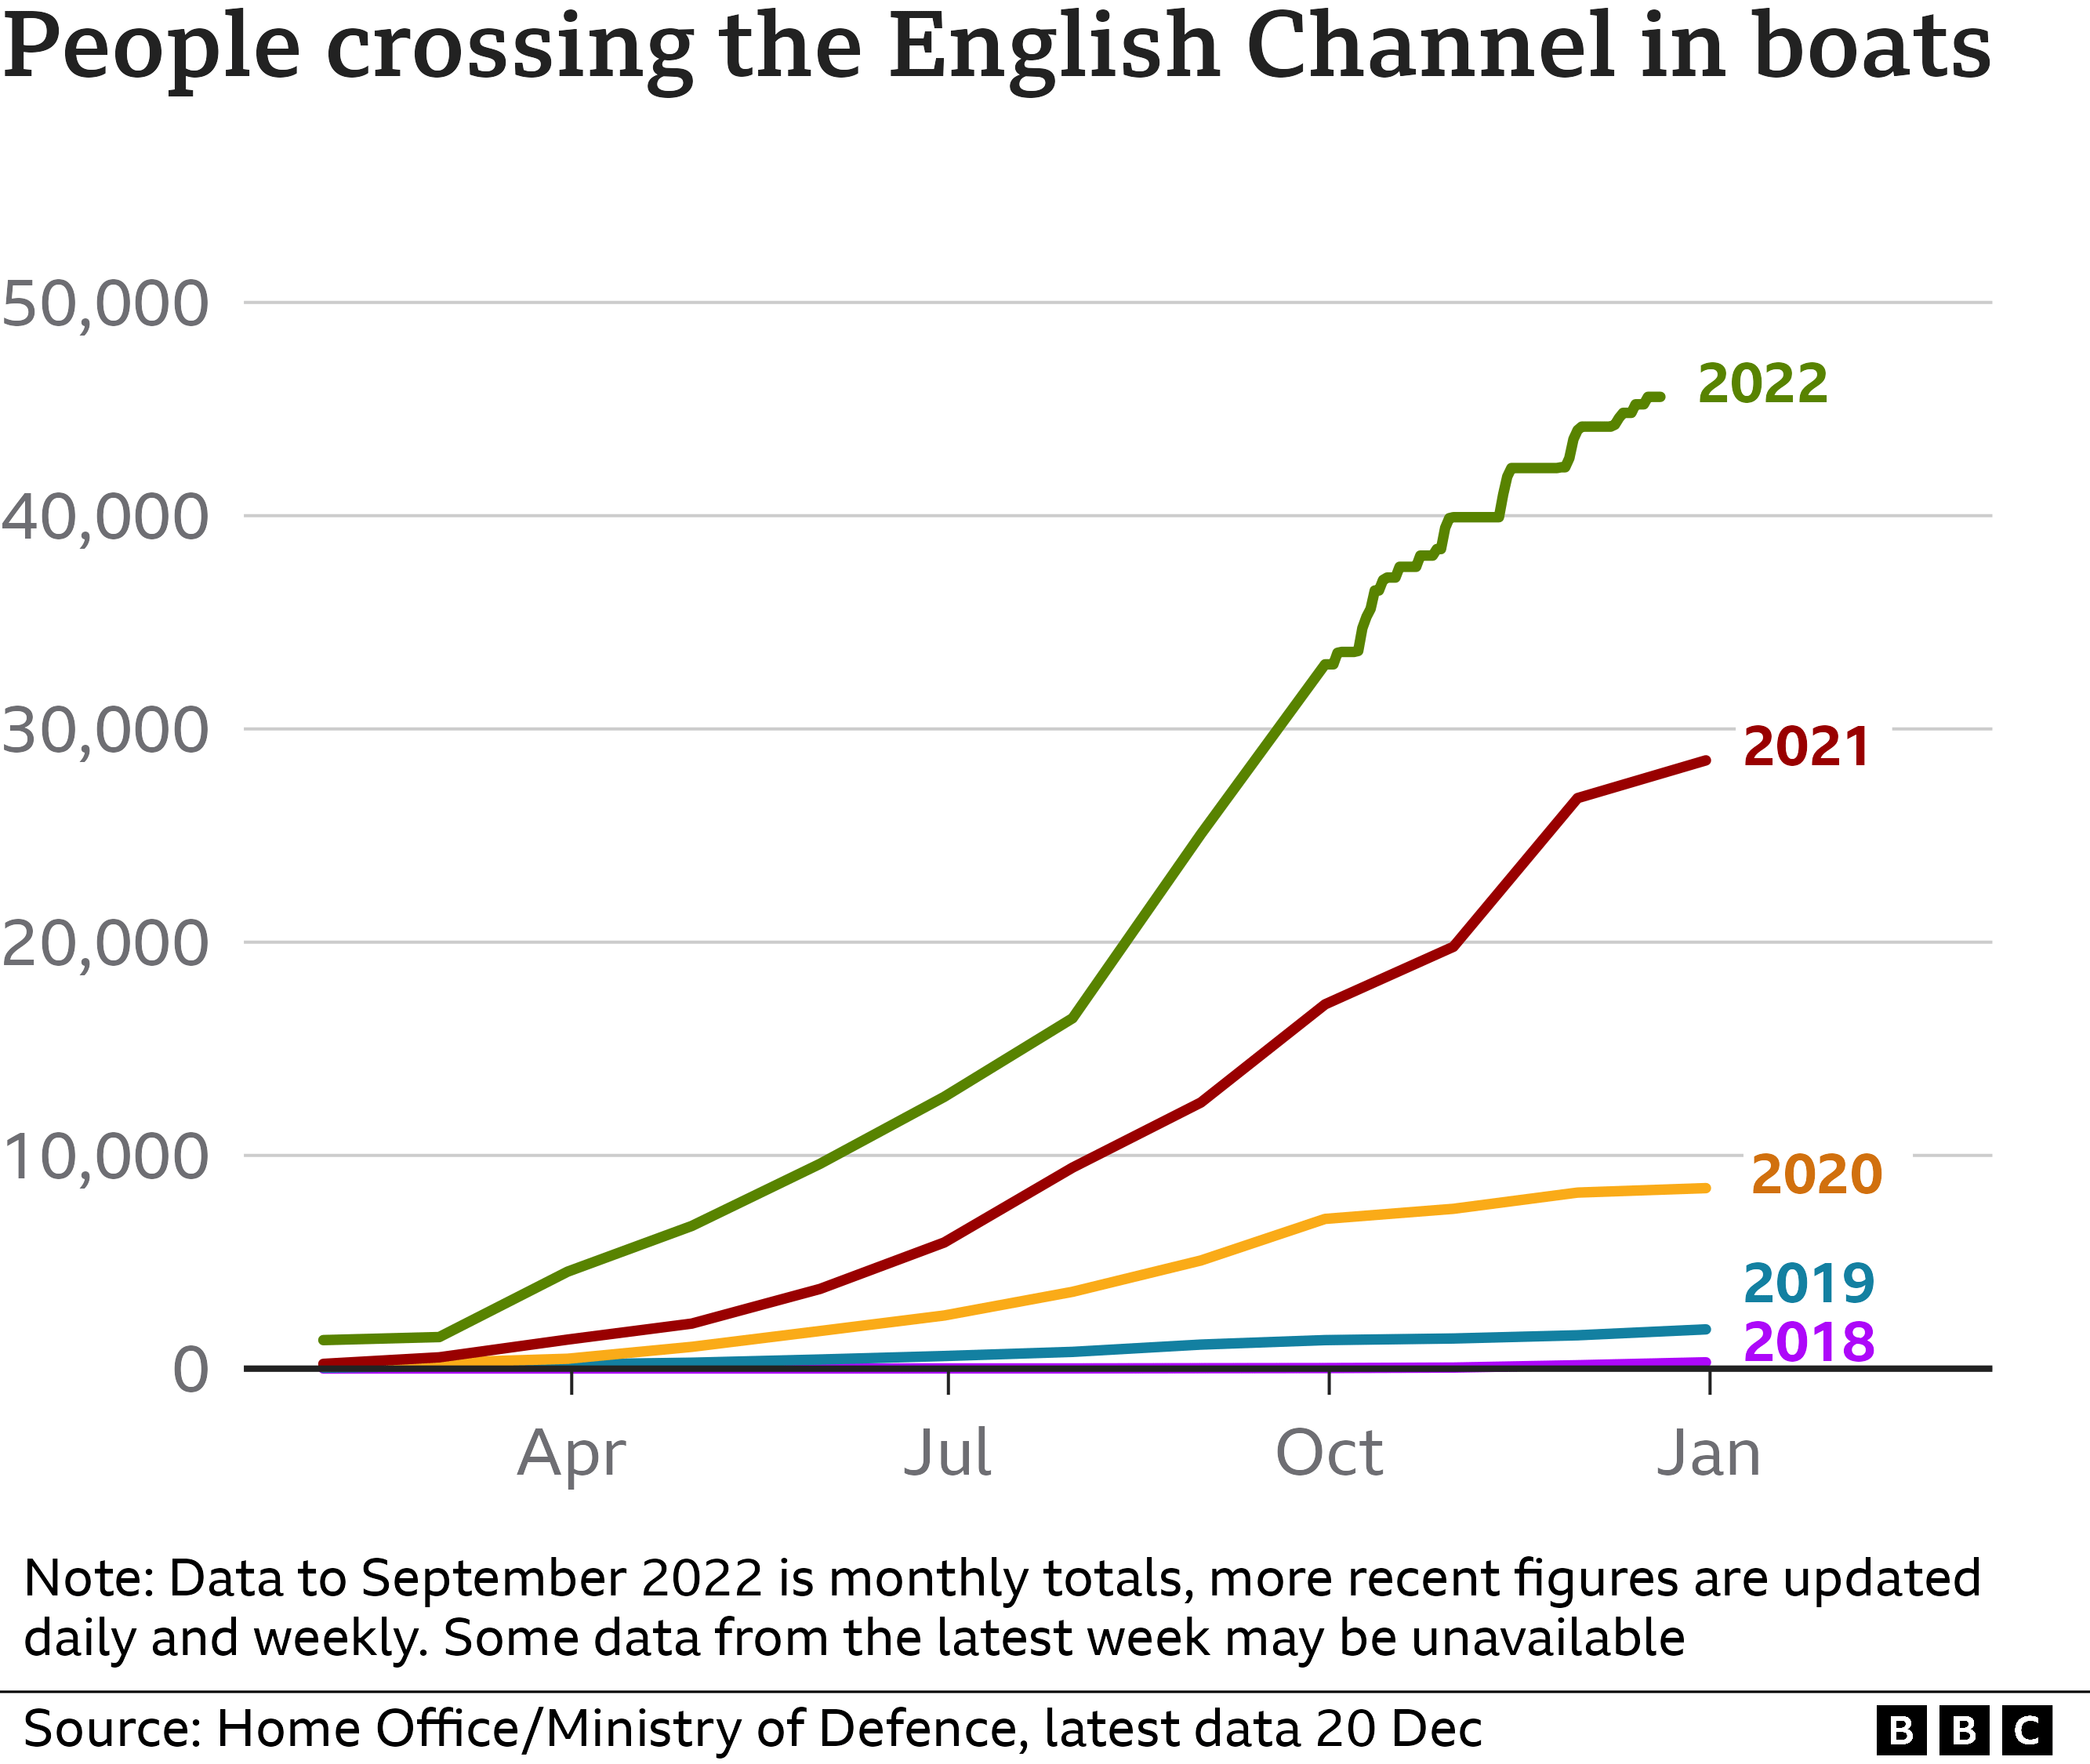 Diagramm zur Anzahl der Personen, die den Ärmelkanal in den Jahren 2018-2022 überqueren, wobei die Zahlen in den Jahren 2021 und 2022 stark ansteigen